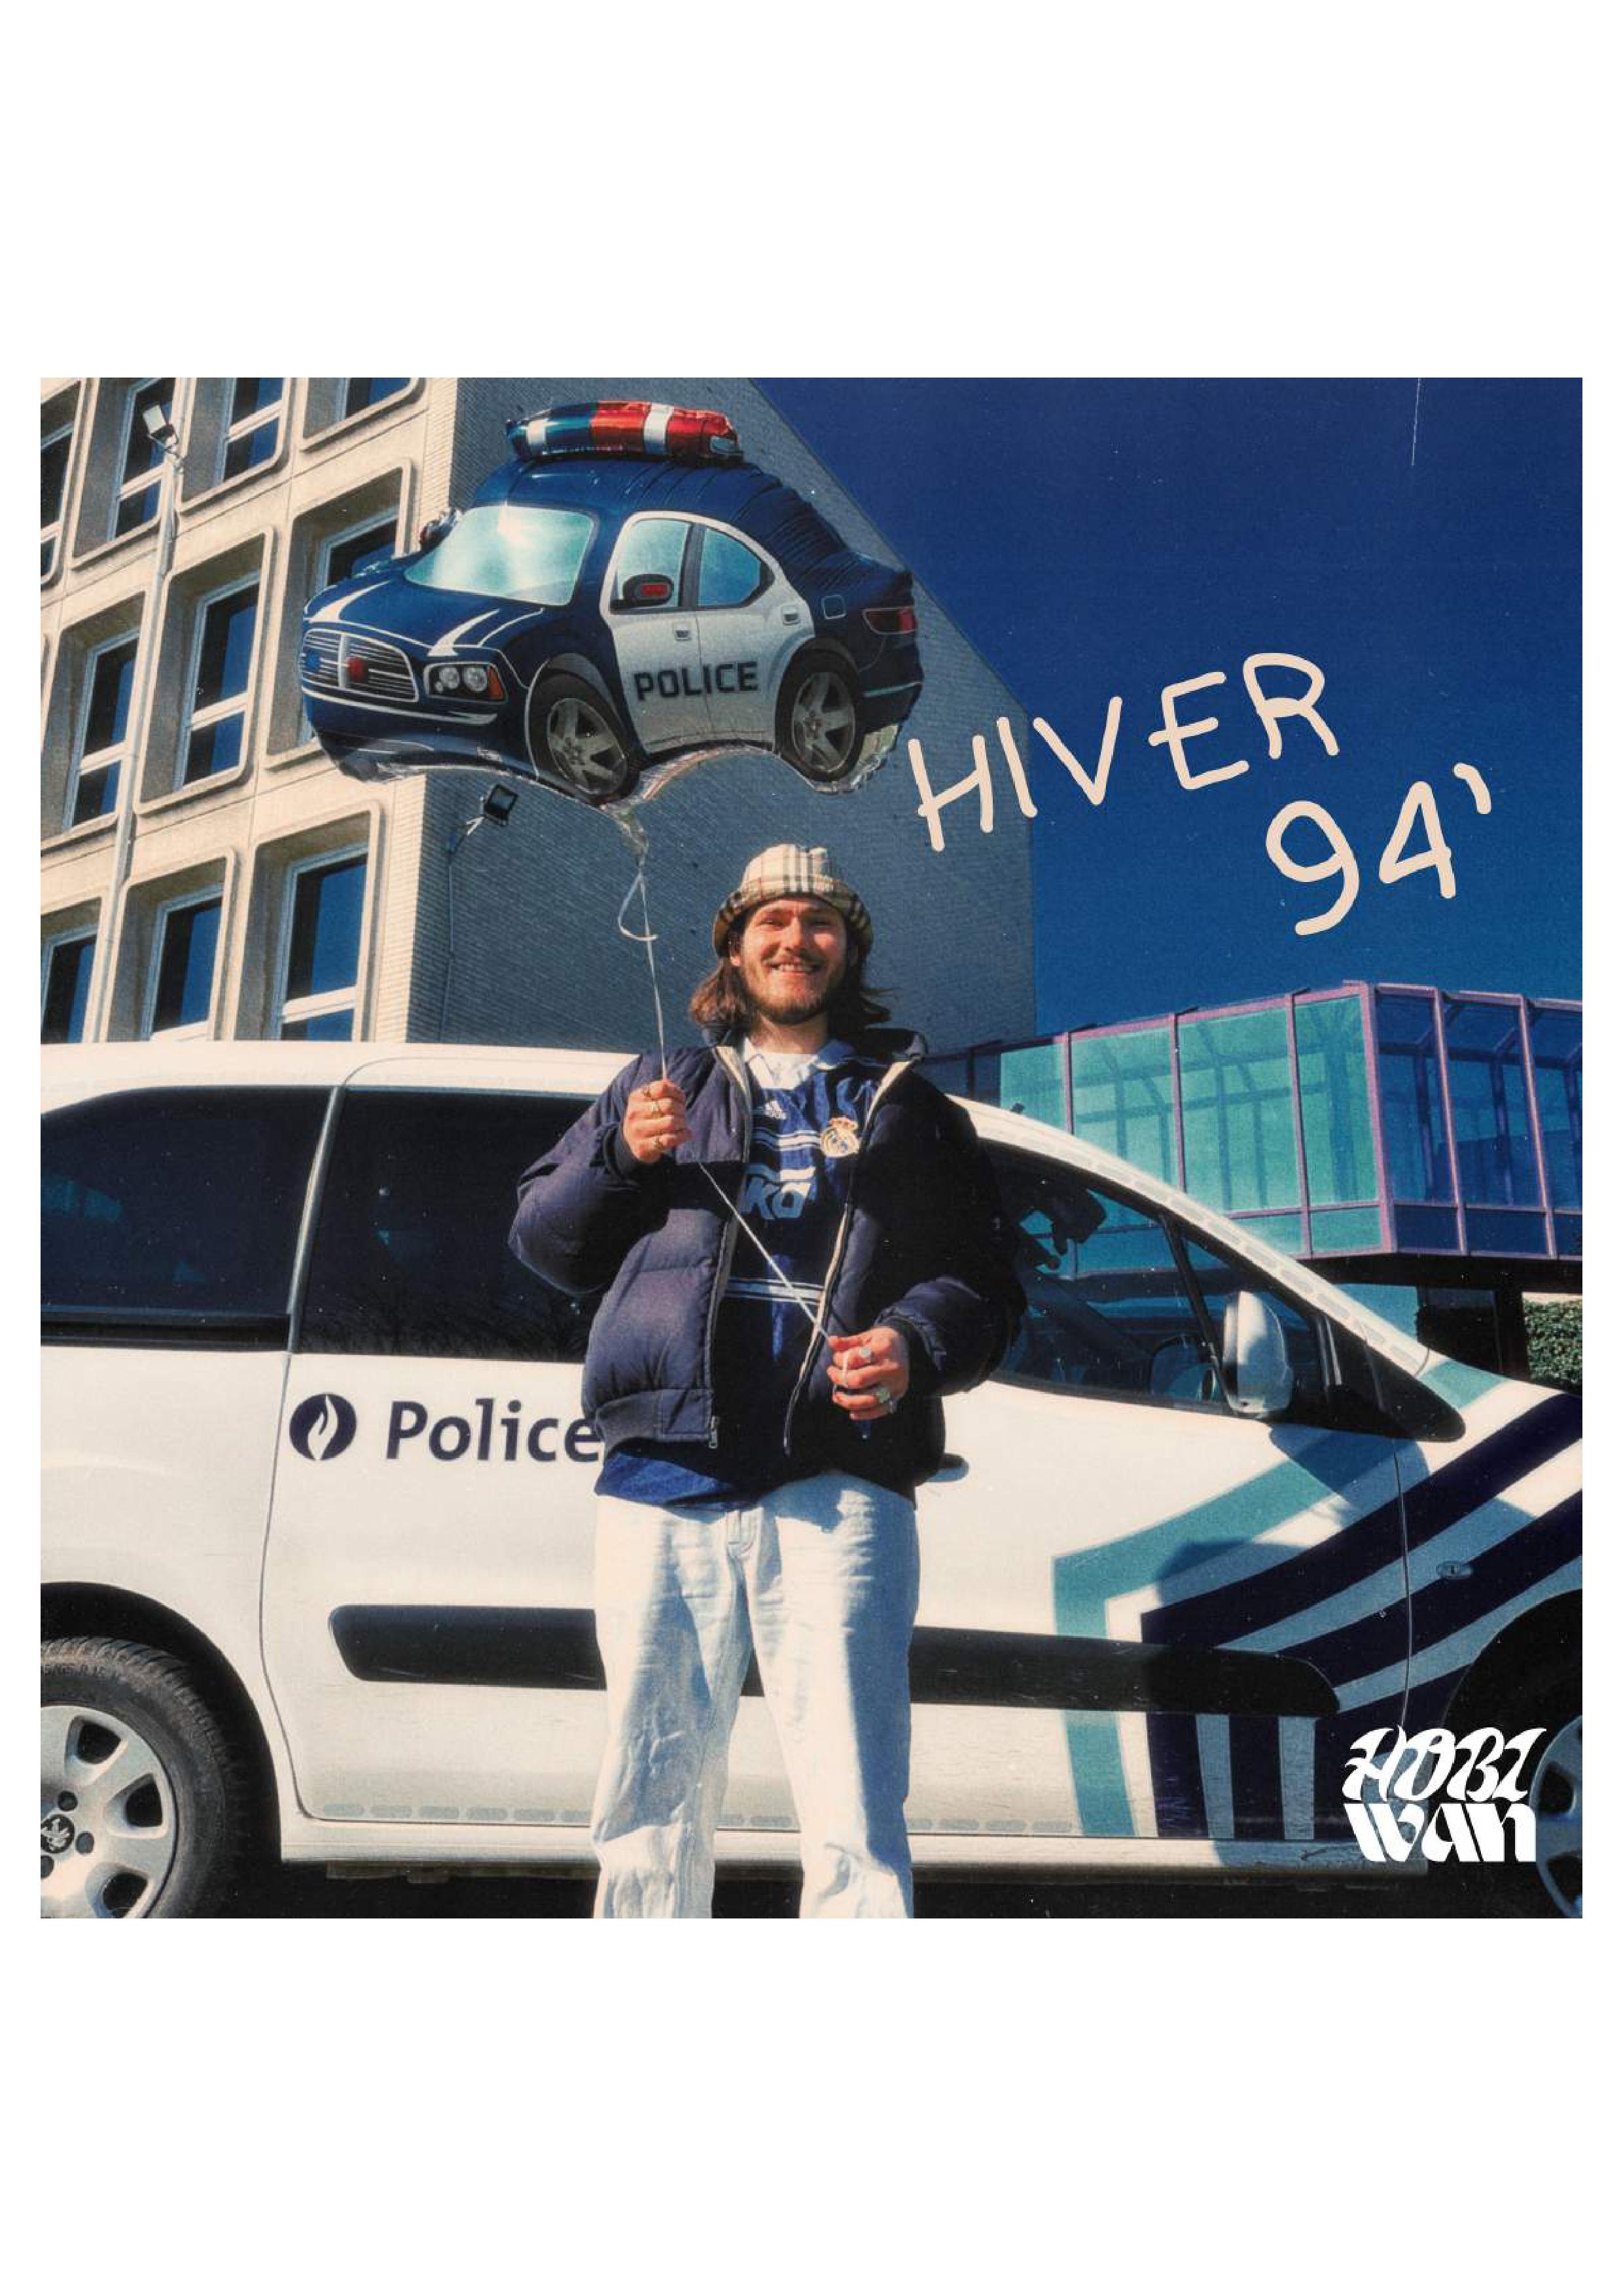 Cover de l'EP "Hiver 94" par Two Law